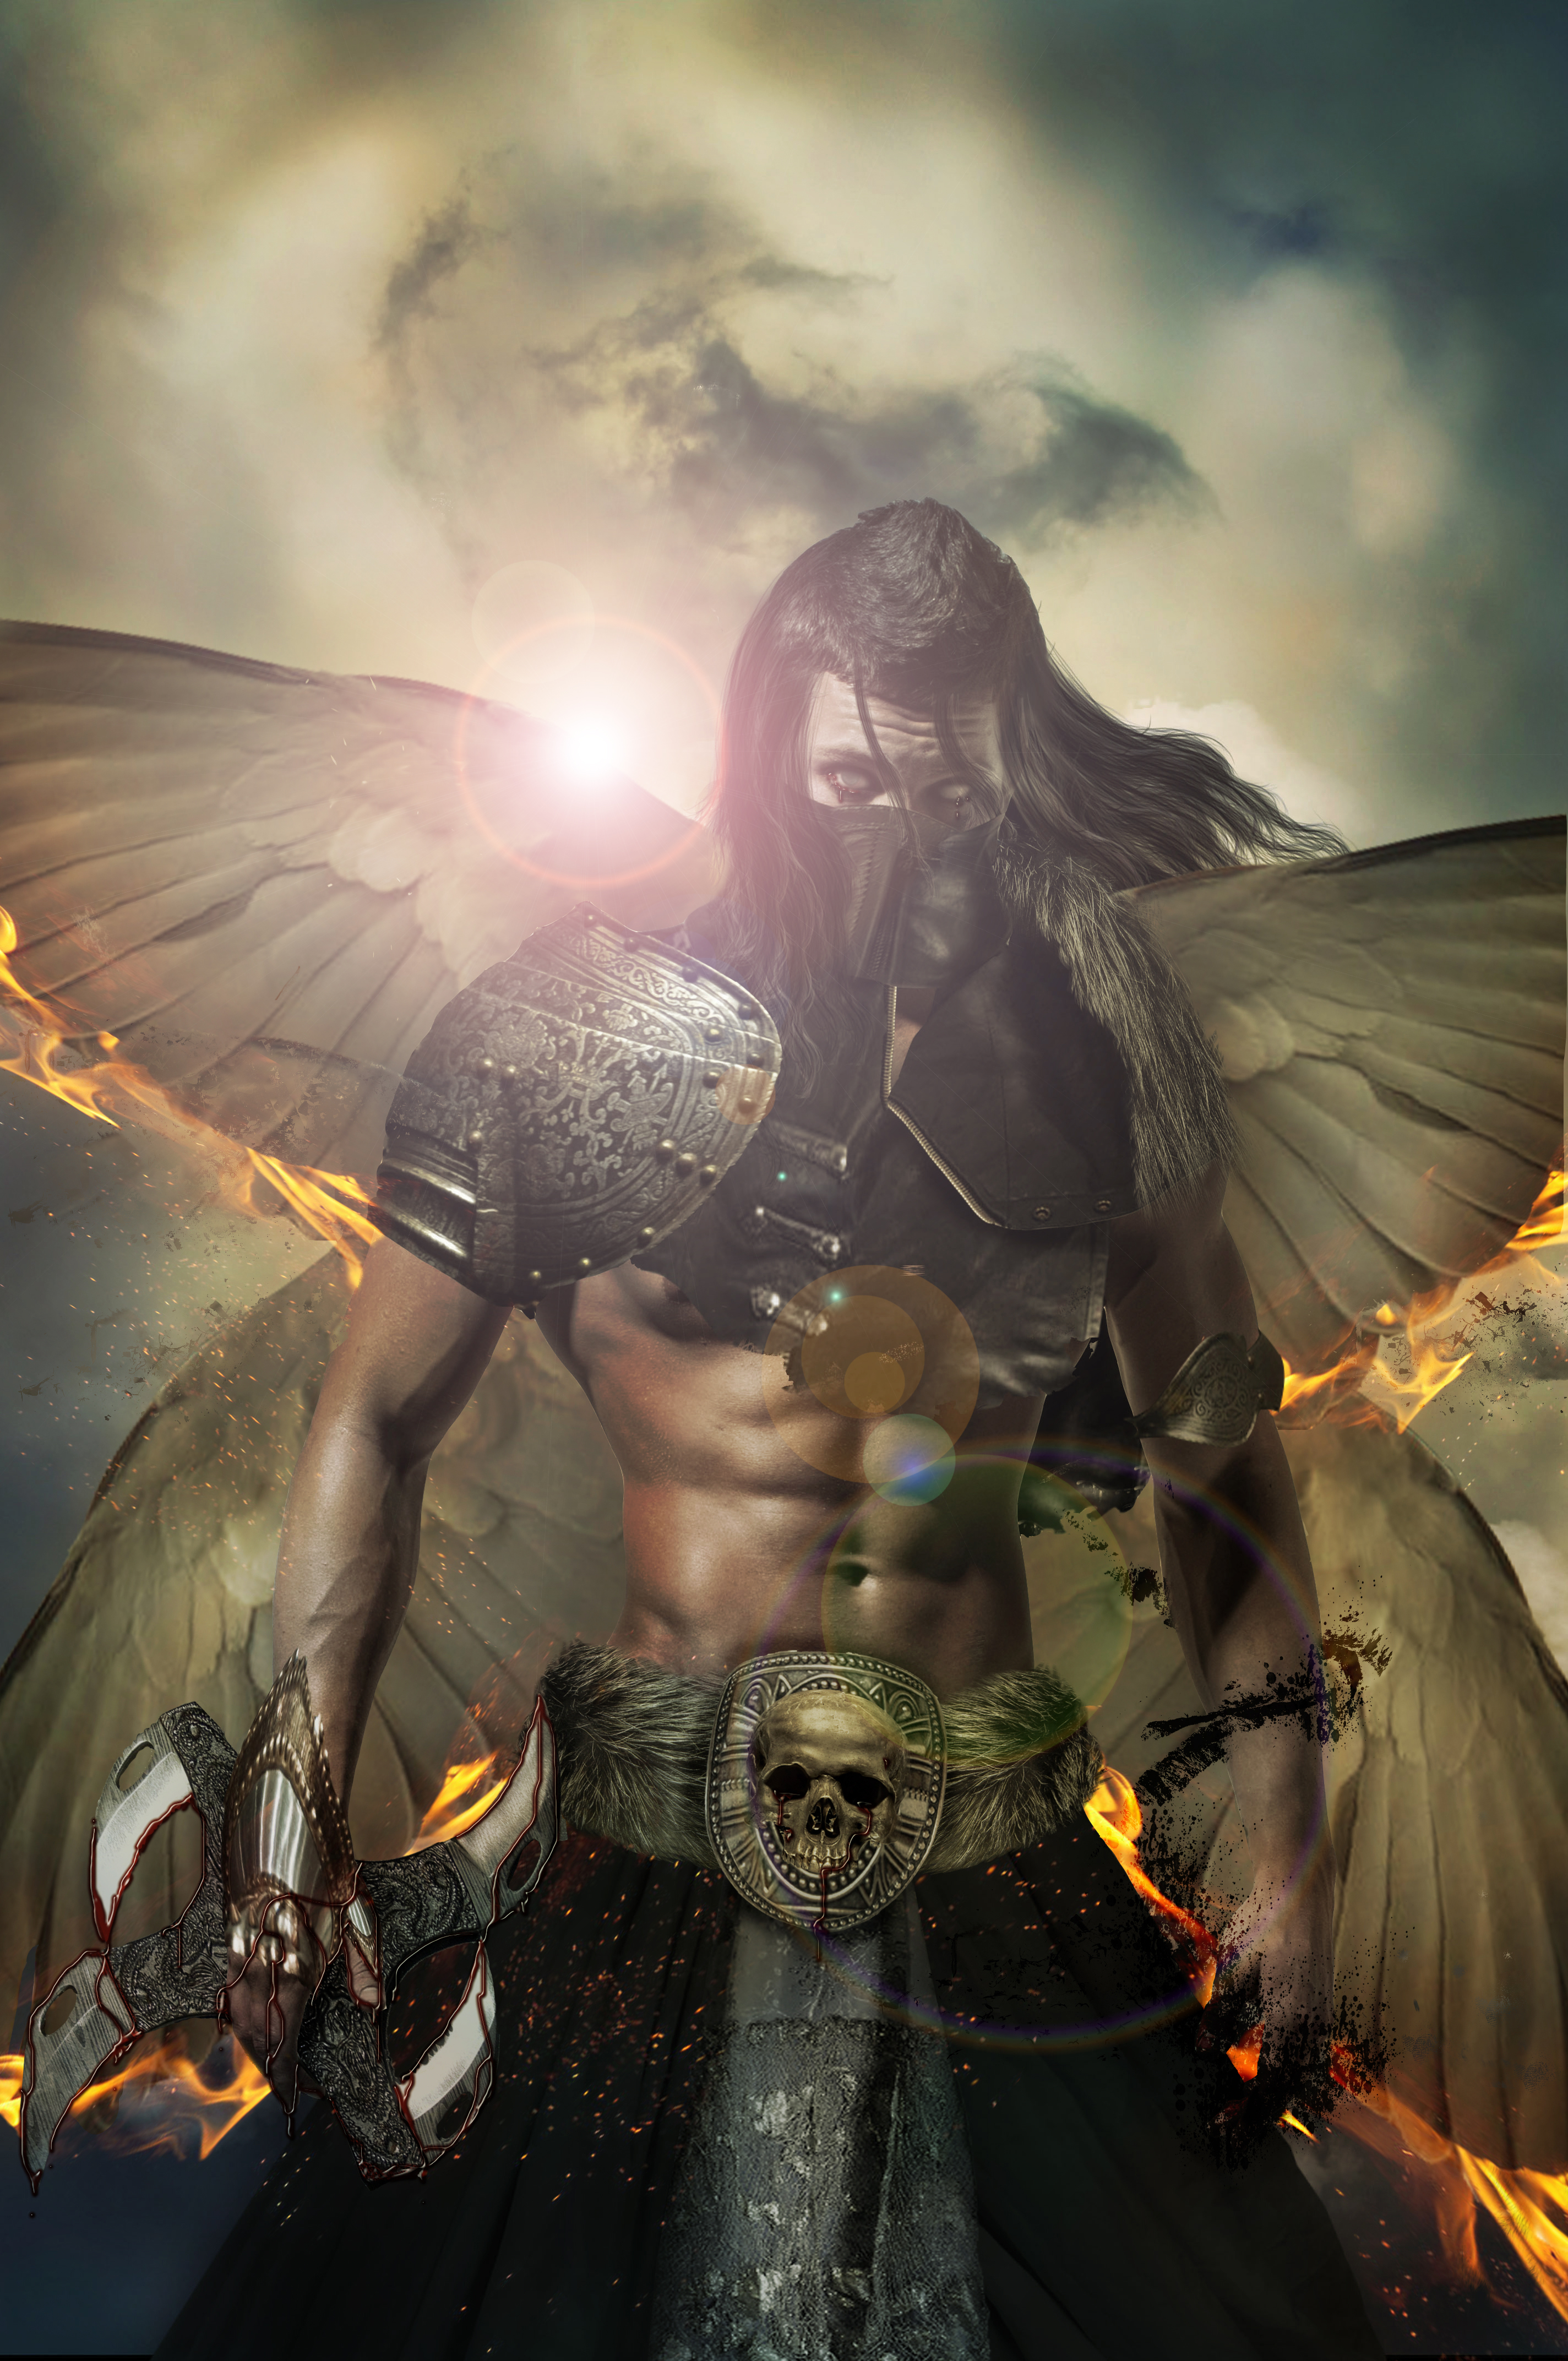 Warhammer 40k  Angel of Death by S0RTUDO on DeviantArt